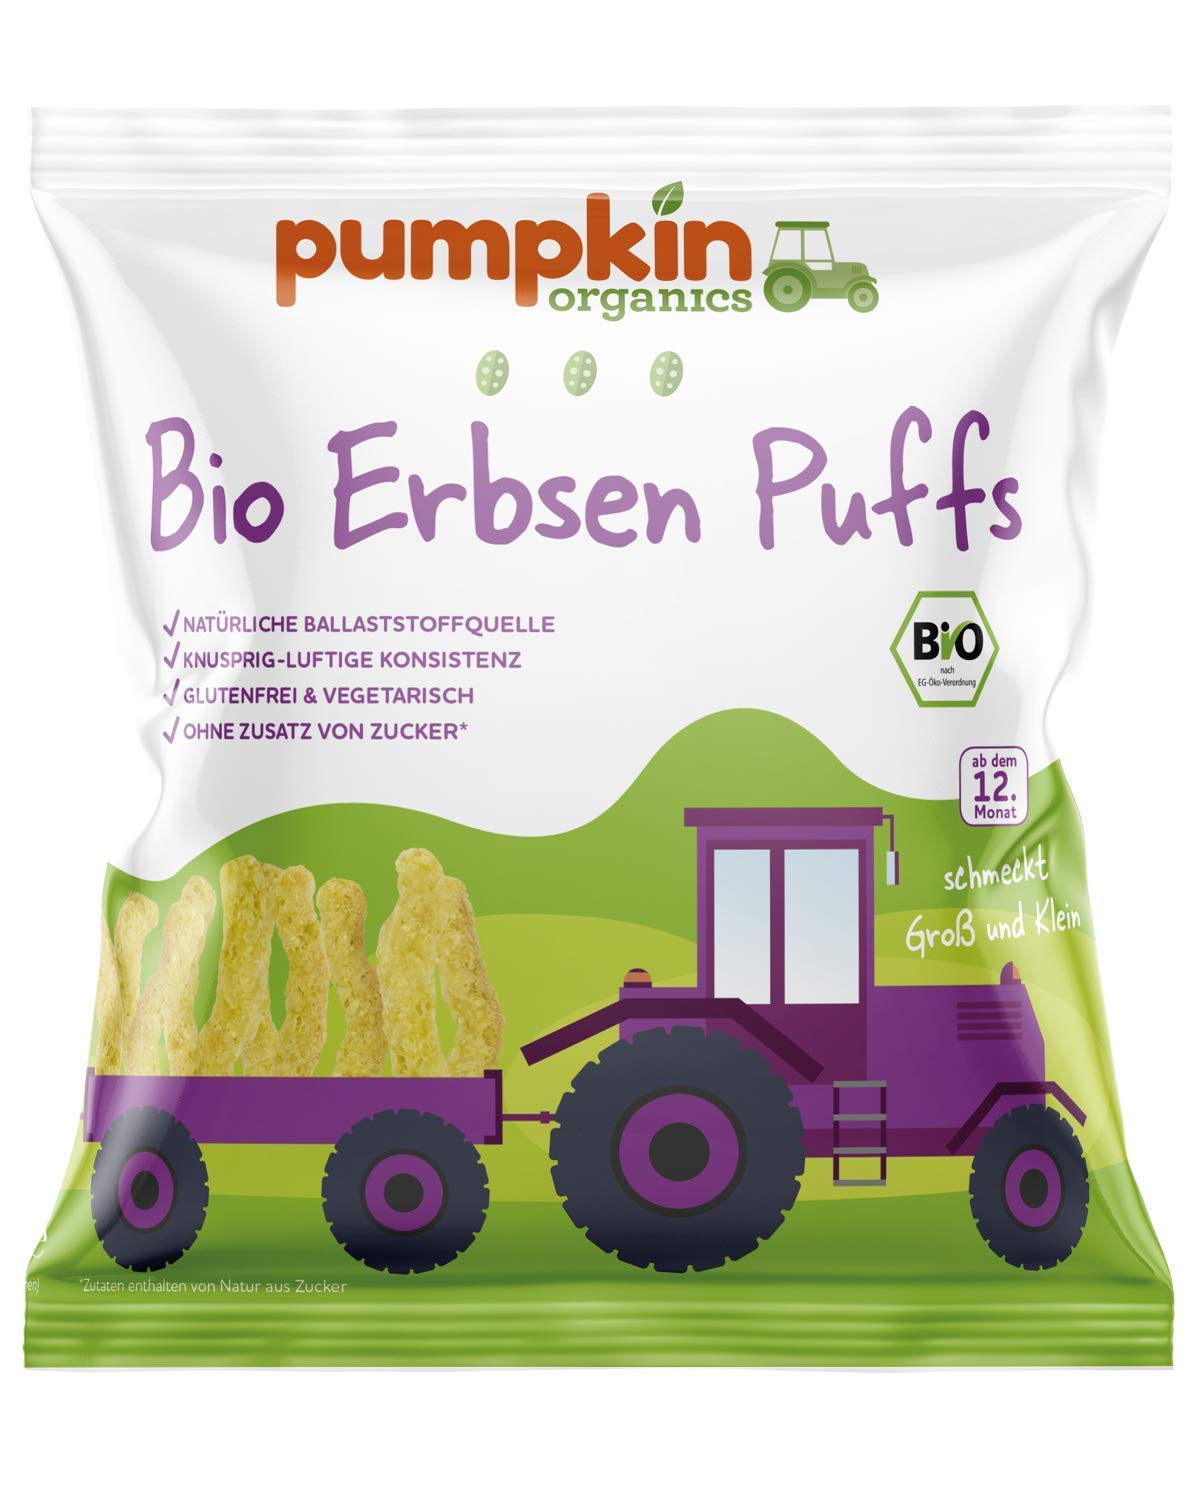 Pumpkin Organics Bio Erbsen Puffs, für Kinder und Babys ab dem 12. Monat, 16er Pack (16x20g)